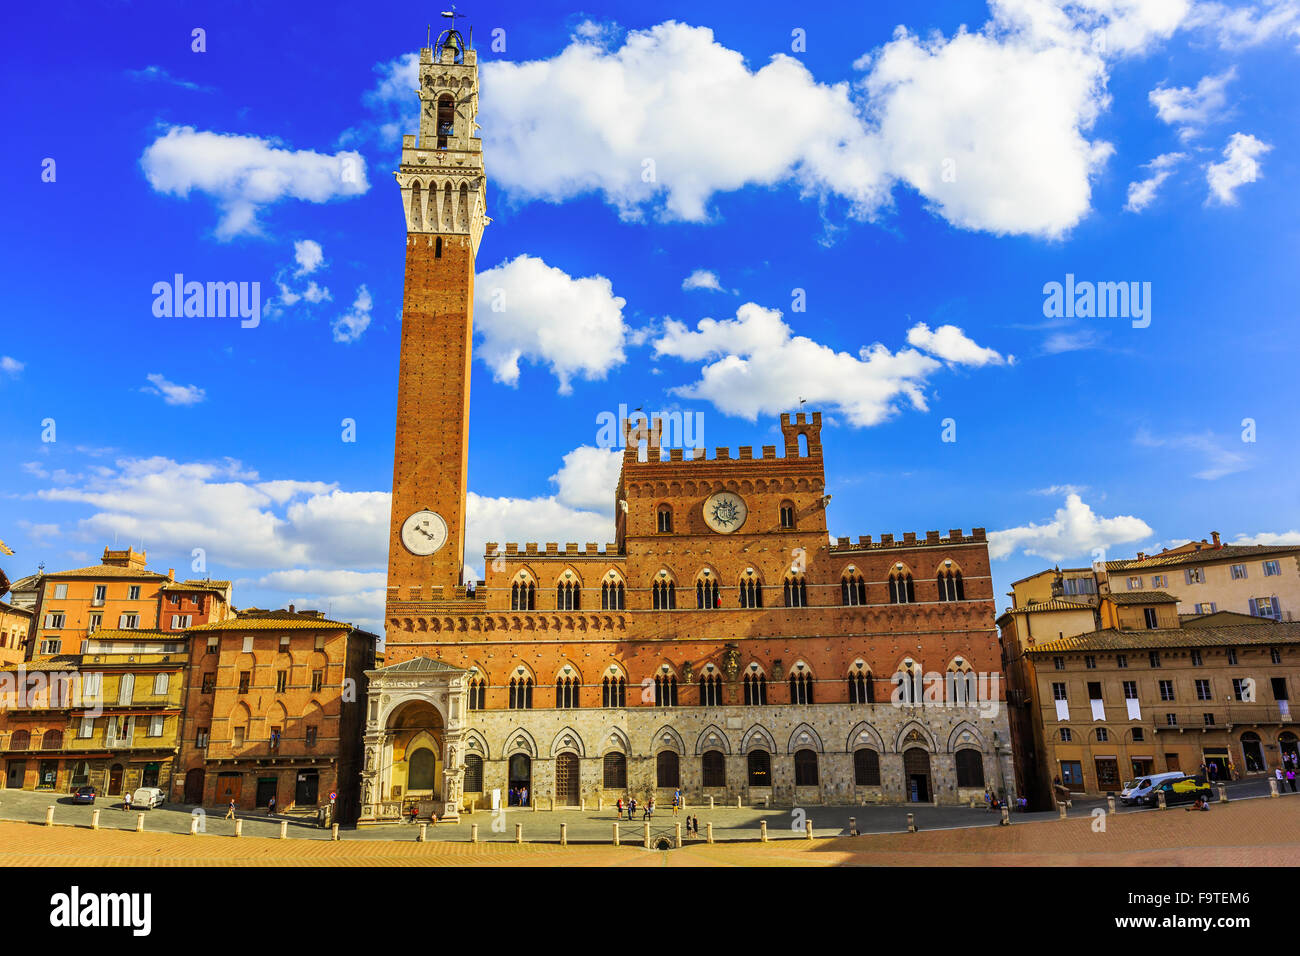 Palazzo Publico and Piazza del Campo, Siena, Italy Stock Photo